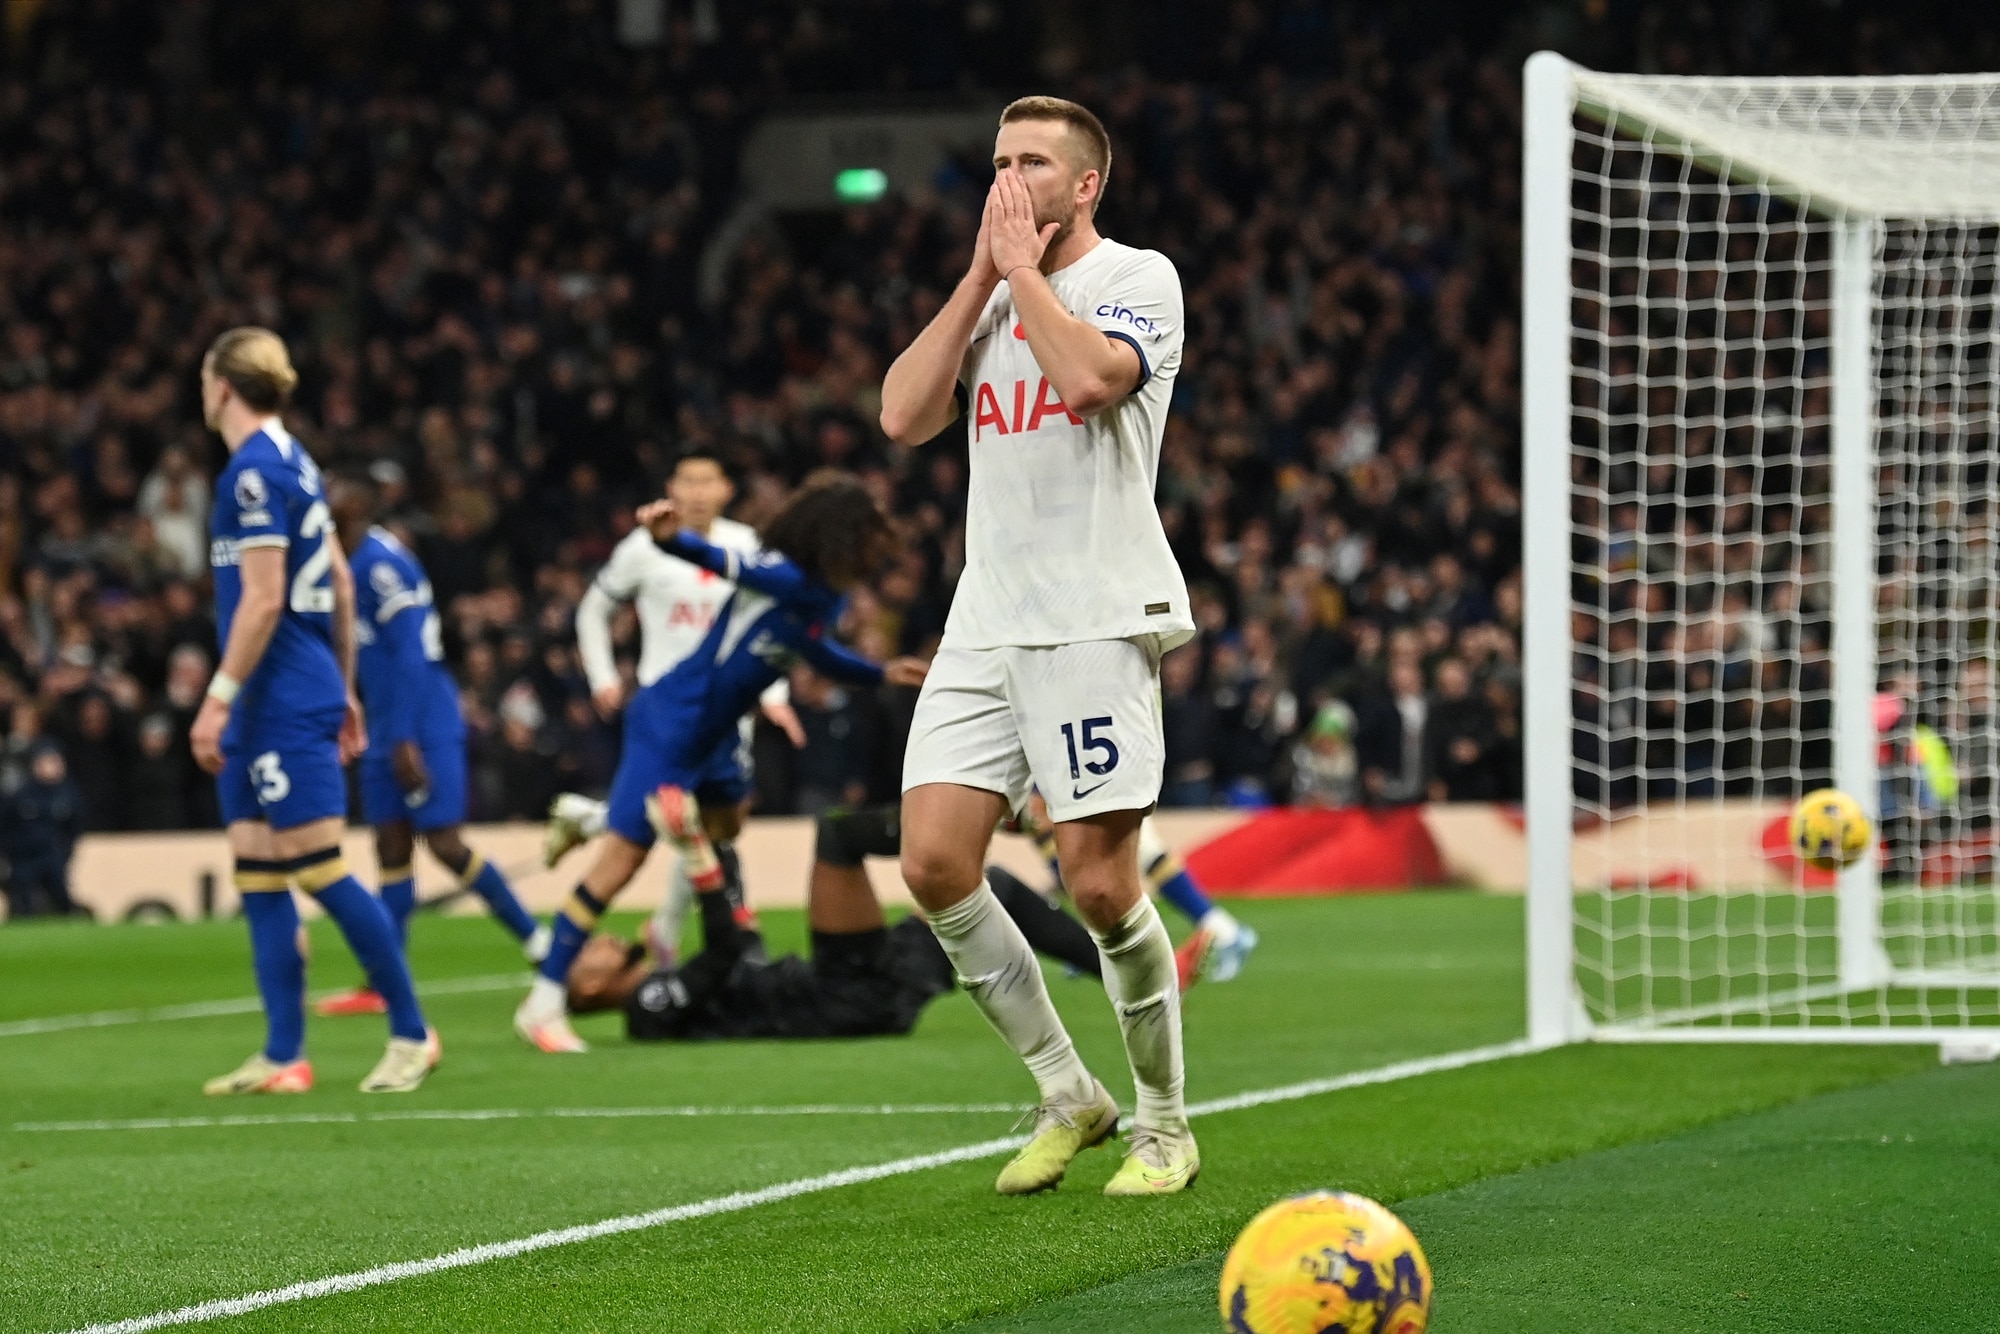 HLV Postecoglou nổi giận chỉ trích VAR sau khi Tottenham bị Chelsea đánh bại - Ảnh 1.